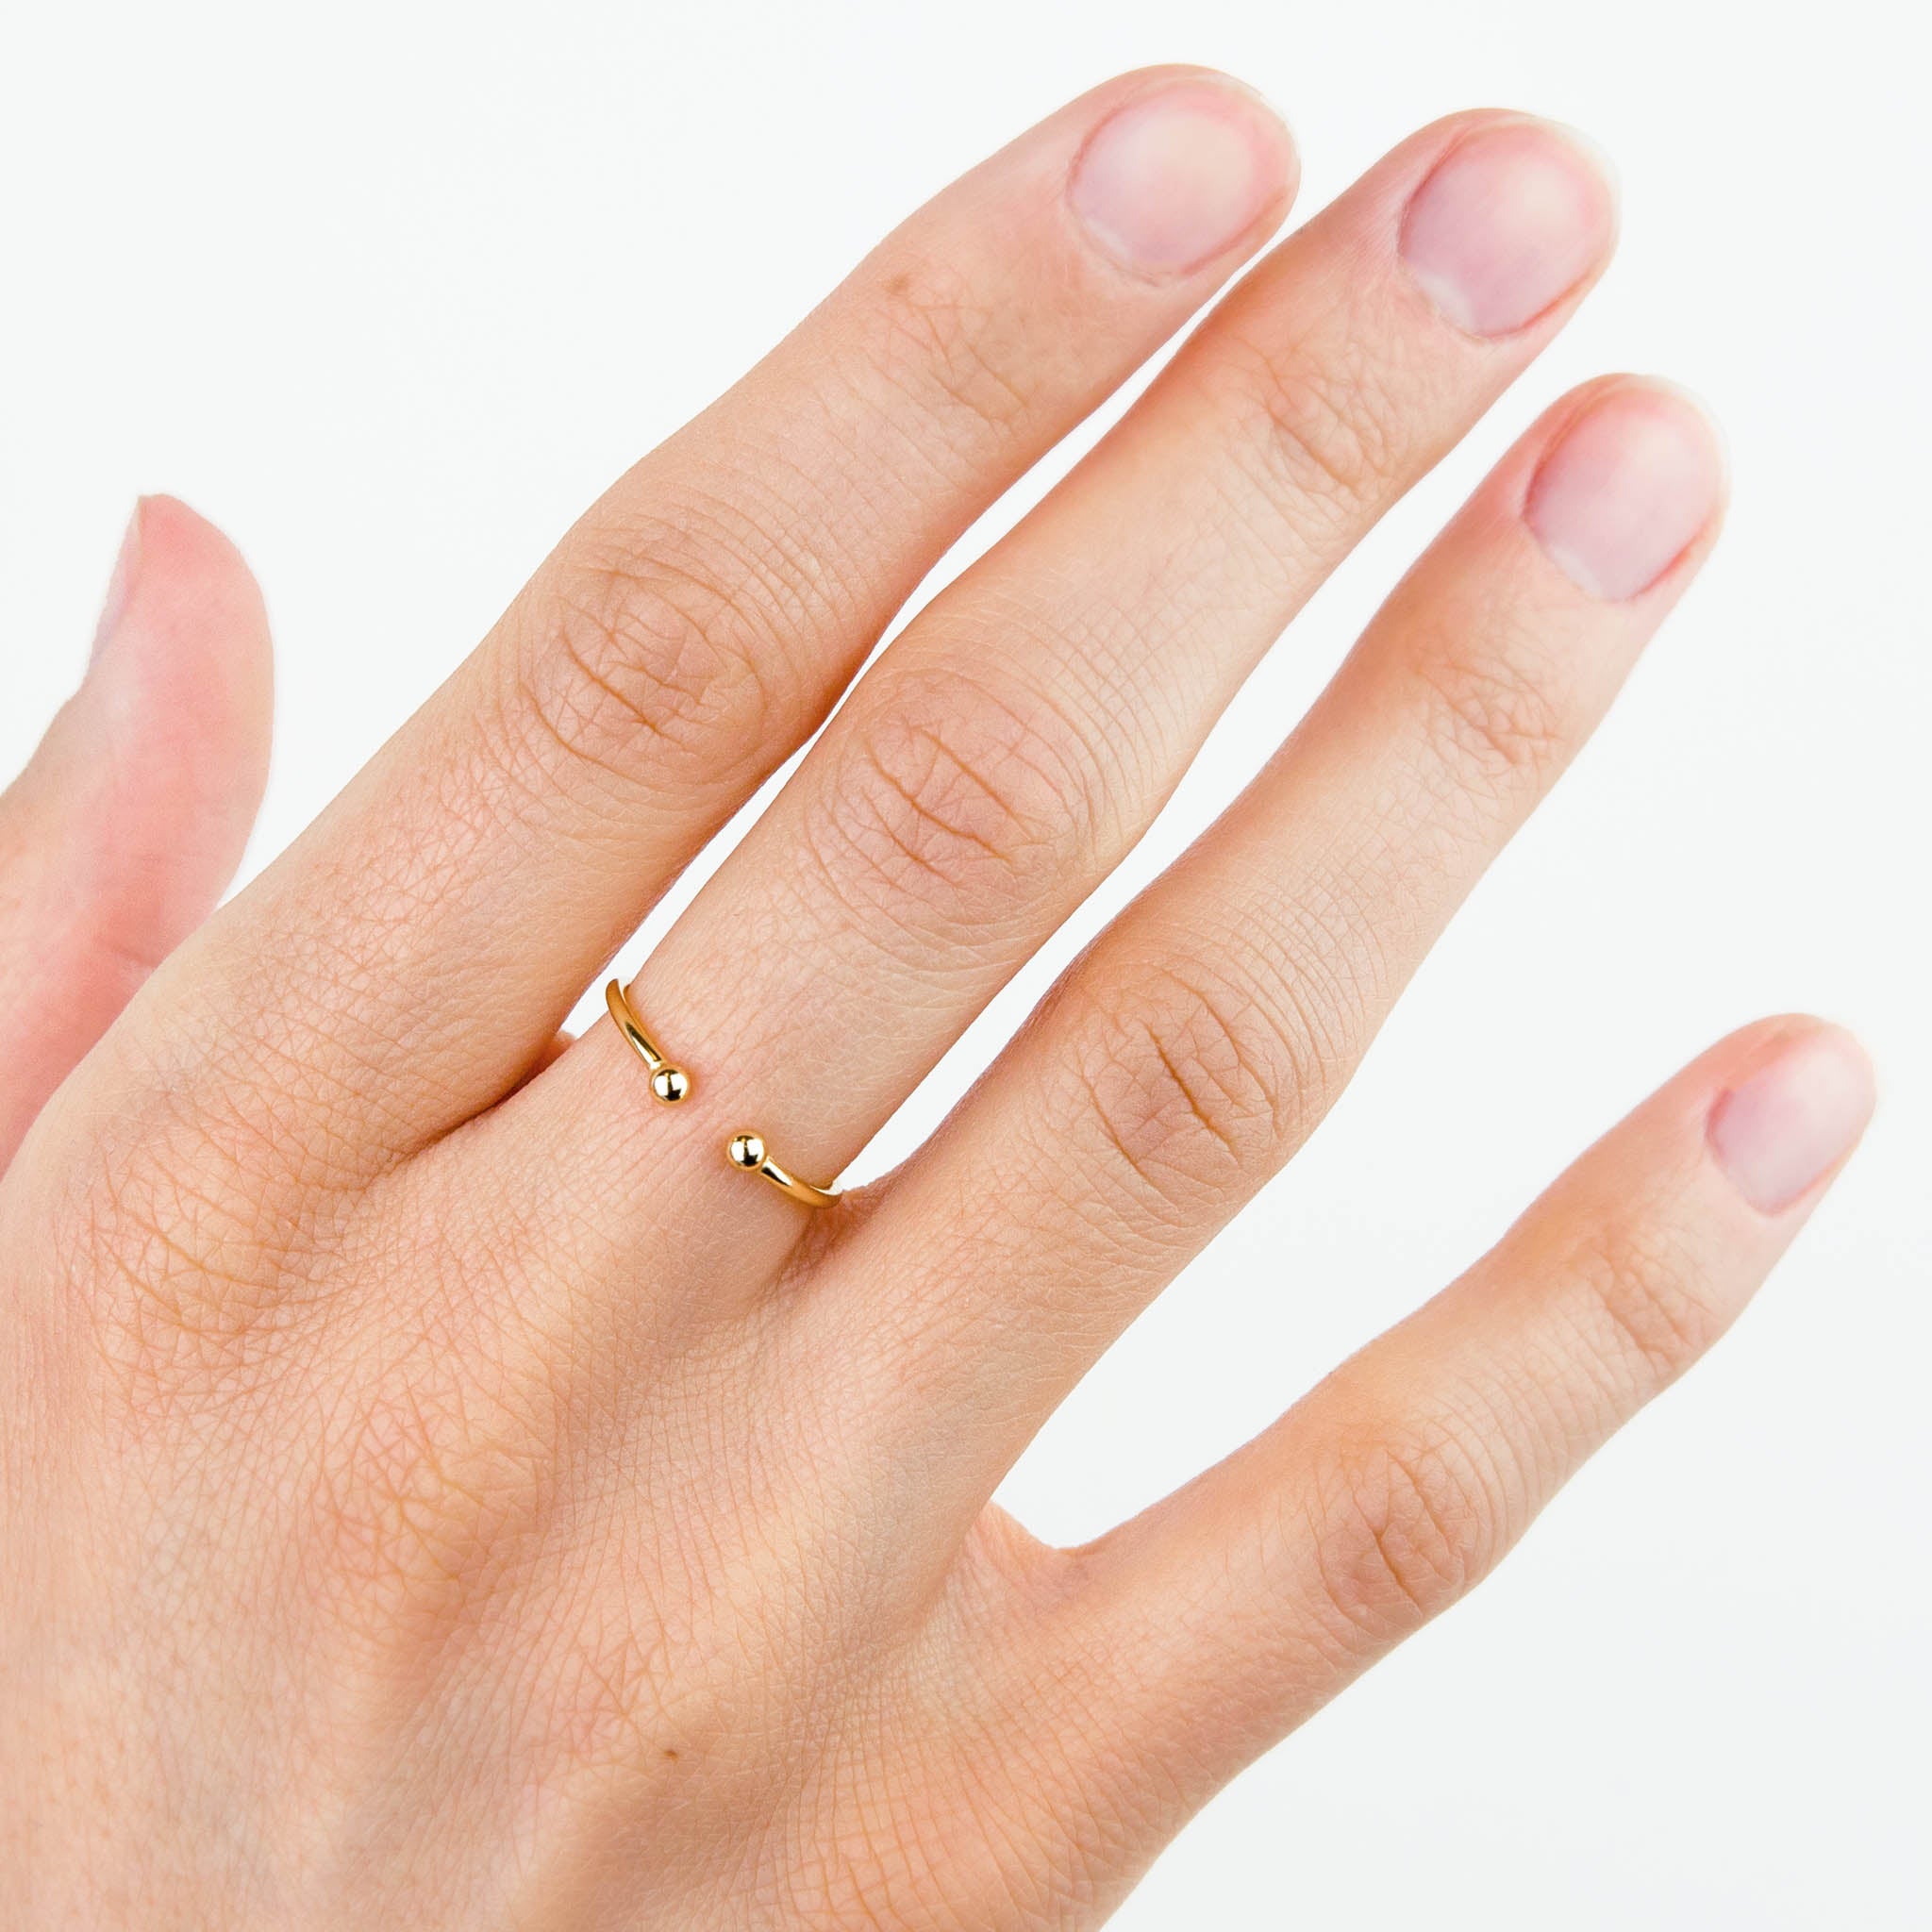 thin gold band ring